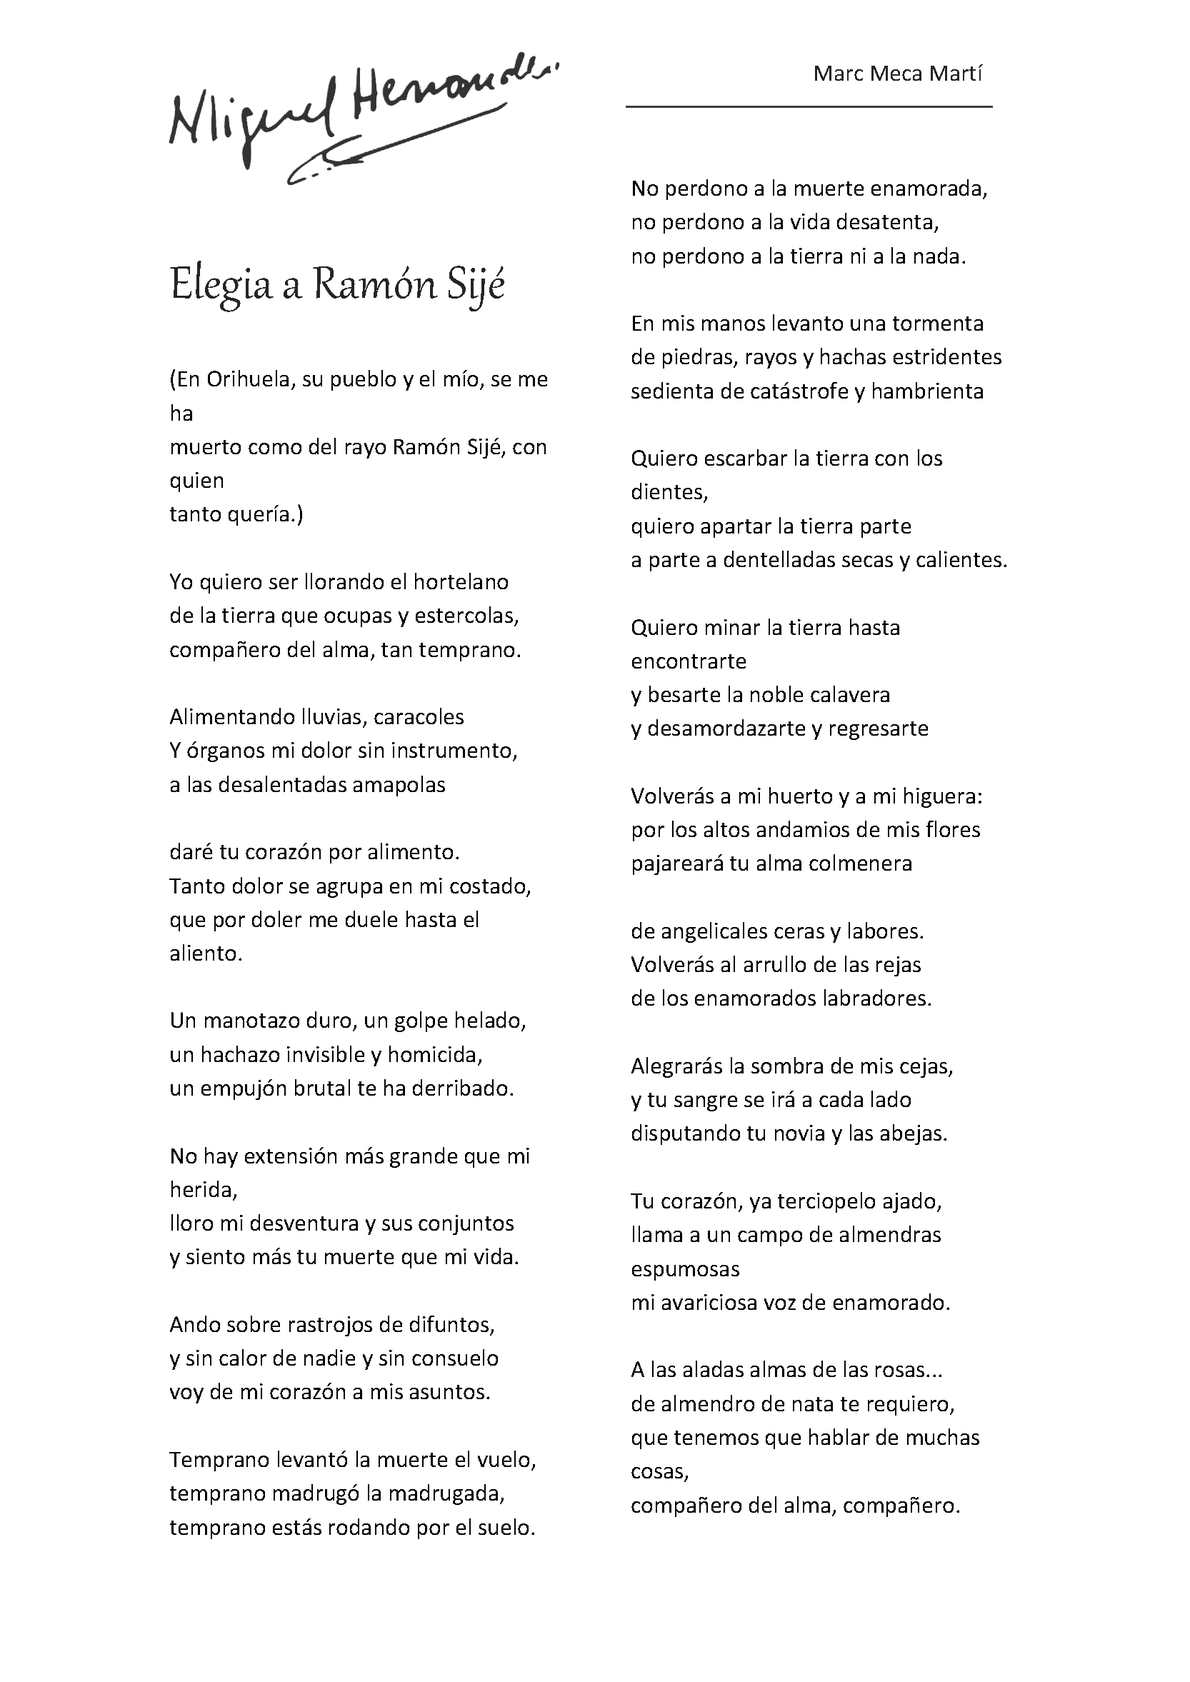 Elegía a Ramón Sijé: La eterna inspiración poética